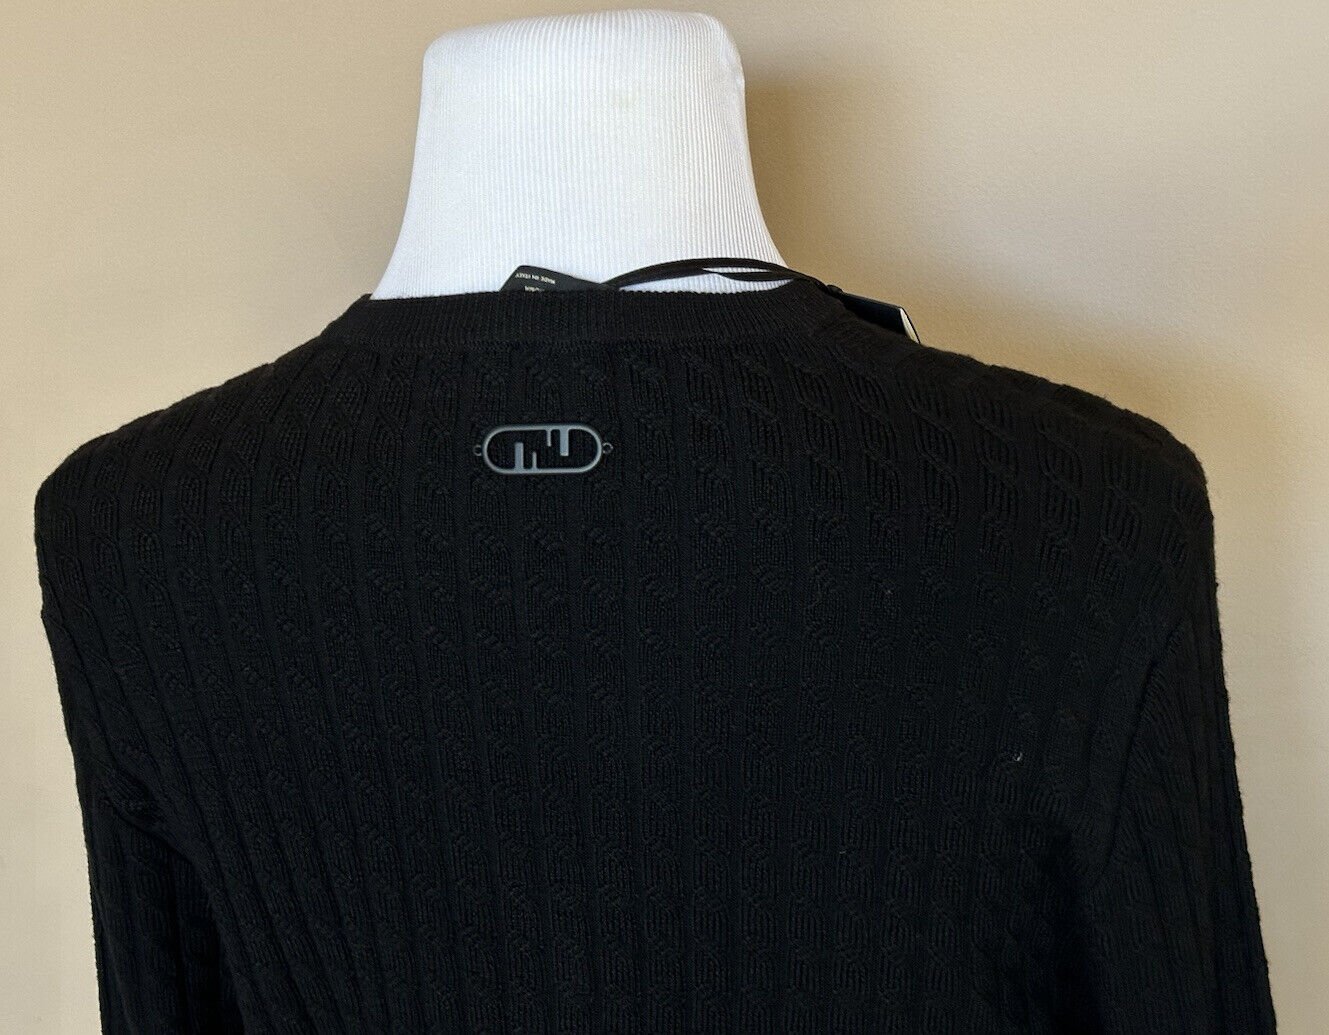 СЗТ 1250 долларов США Fendi Шерстяной вязаный пуловер Черный 54 евро FZX077 Сделано в Италии 